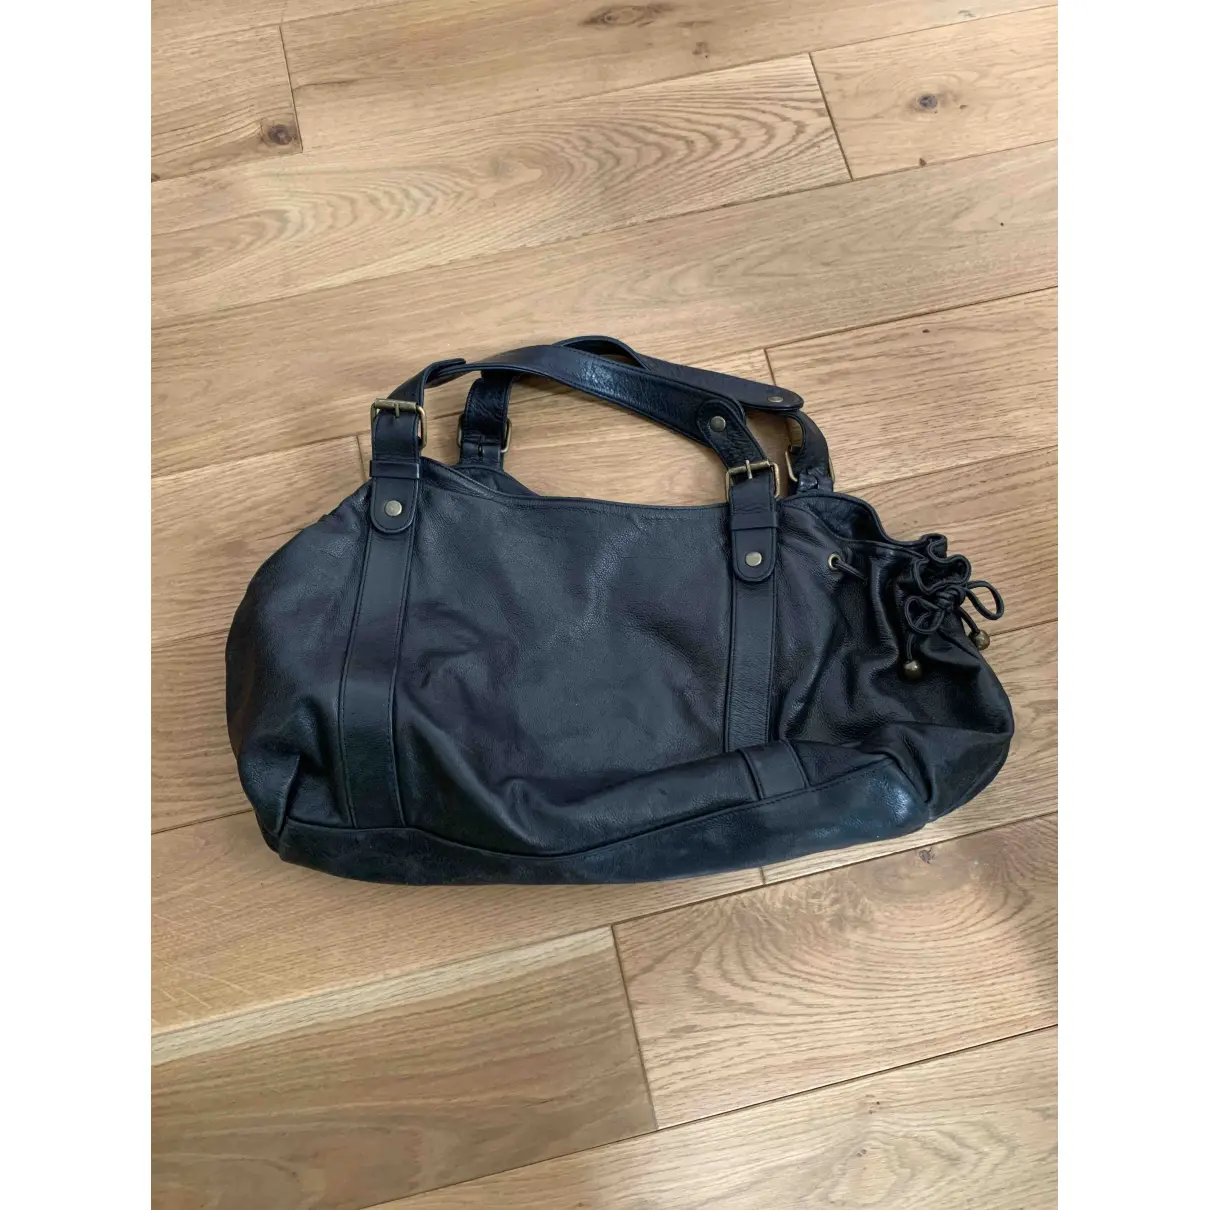 Buy Gerard Darel 24h leather handbag online